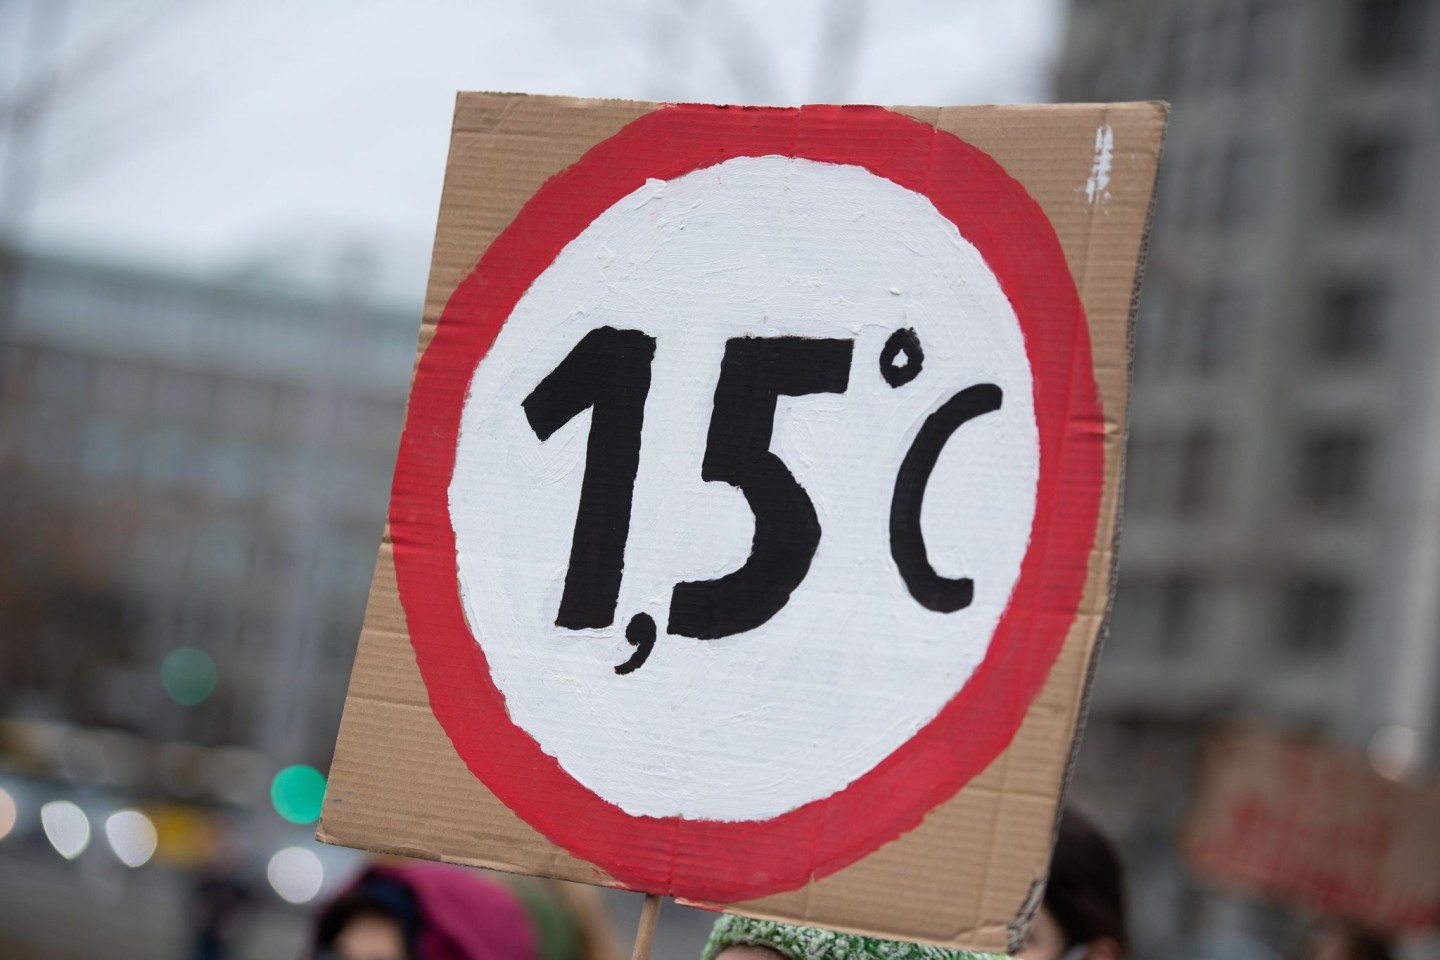 Klimaaktivisten fordern die Einhaltung des 1,5-Grad-Ziels - doch das wird nicht klappen, so eine neue Studie.